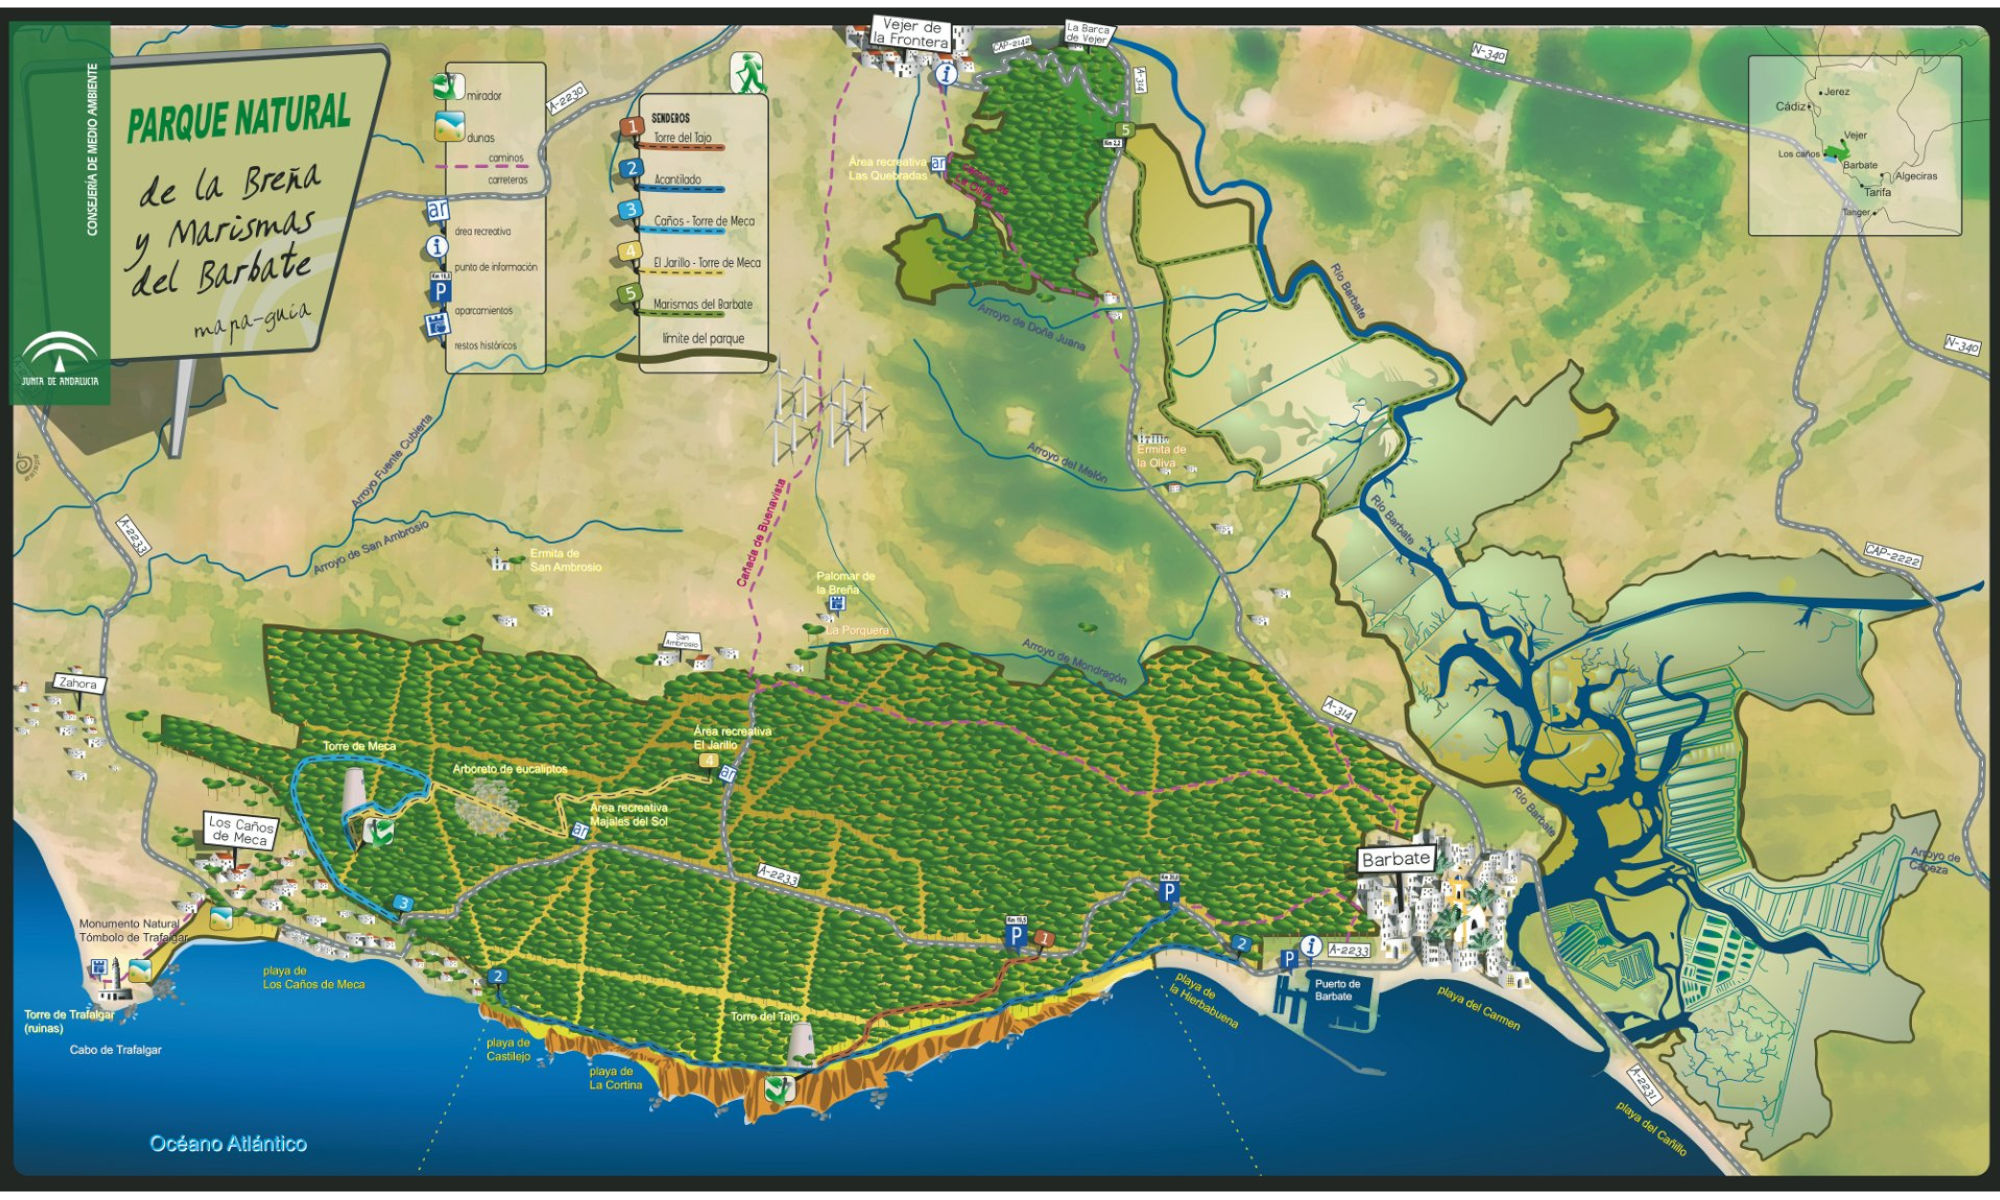 Mapa-guía del Parque Natural Breña y Marismas del Barbate